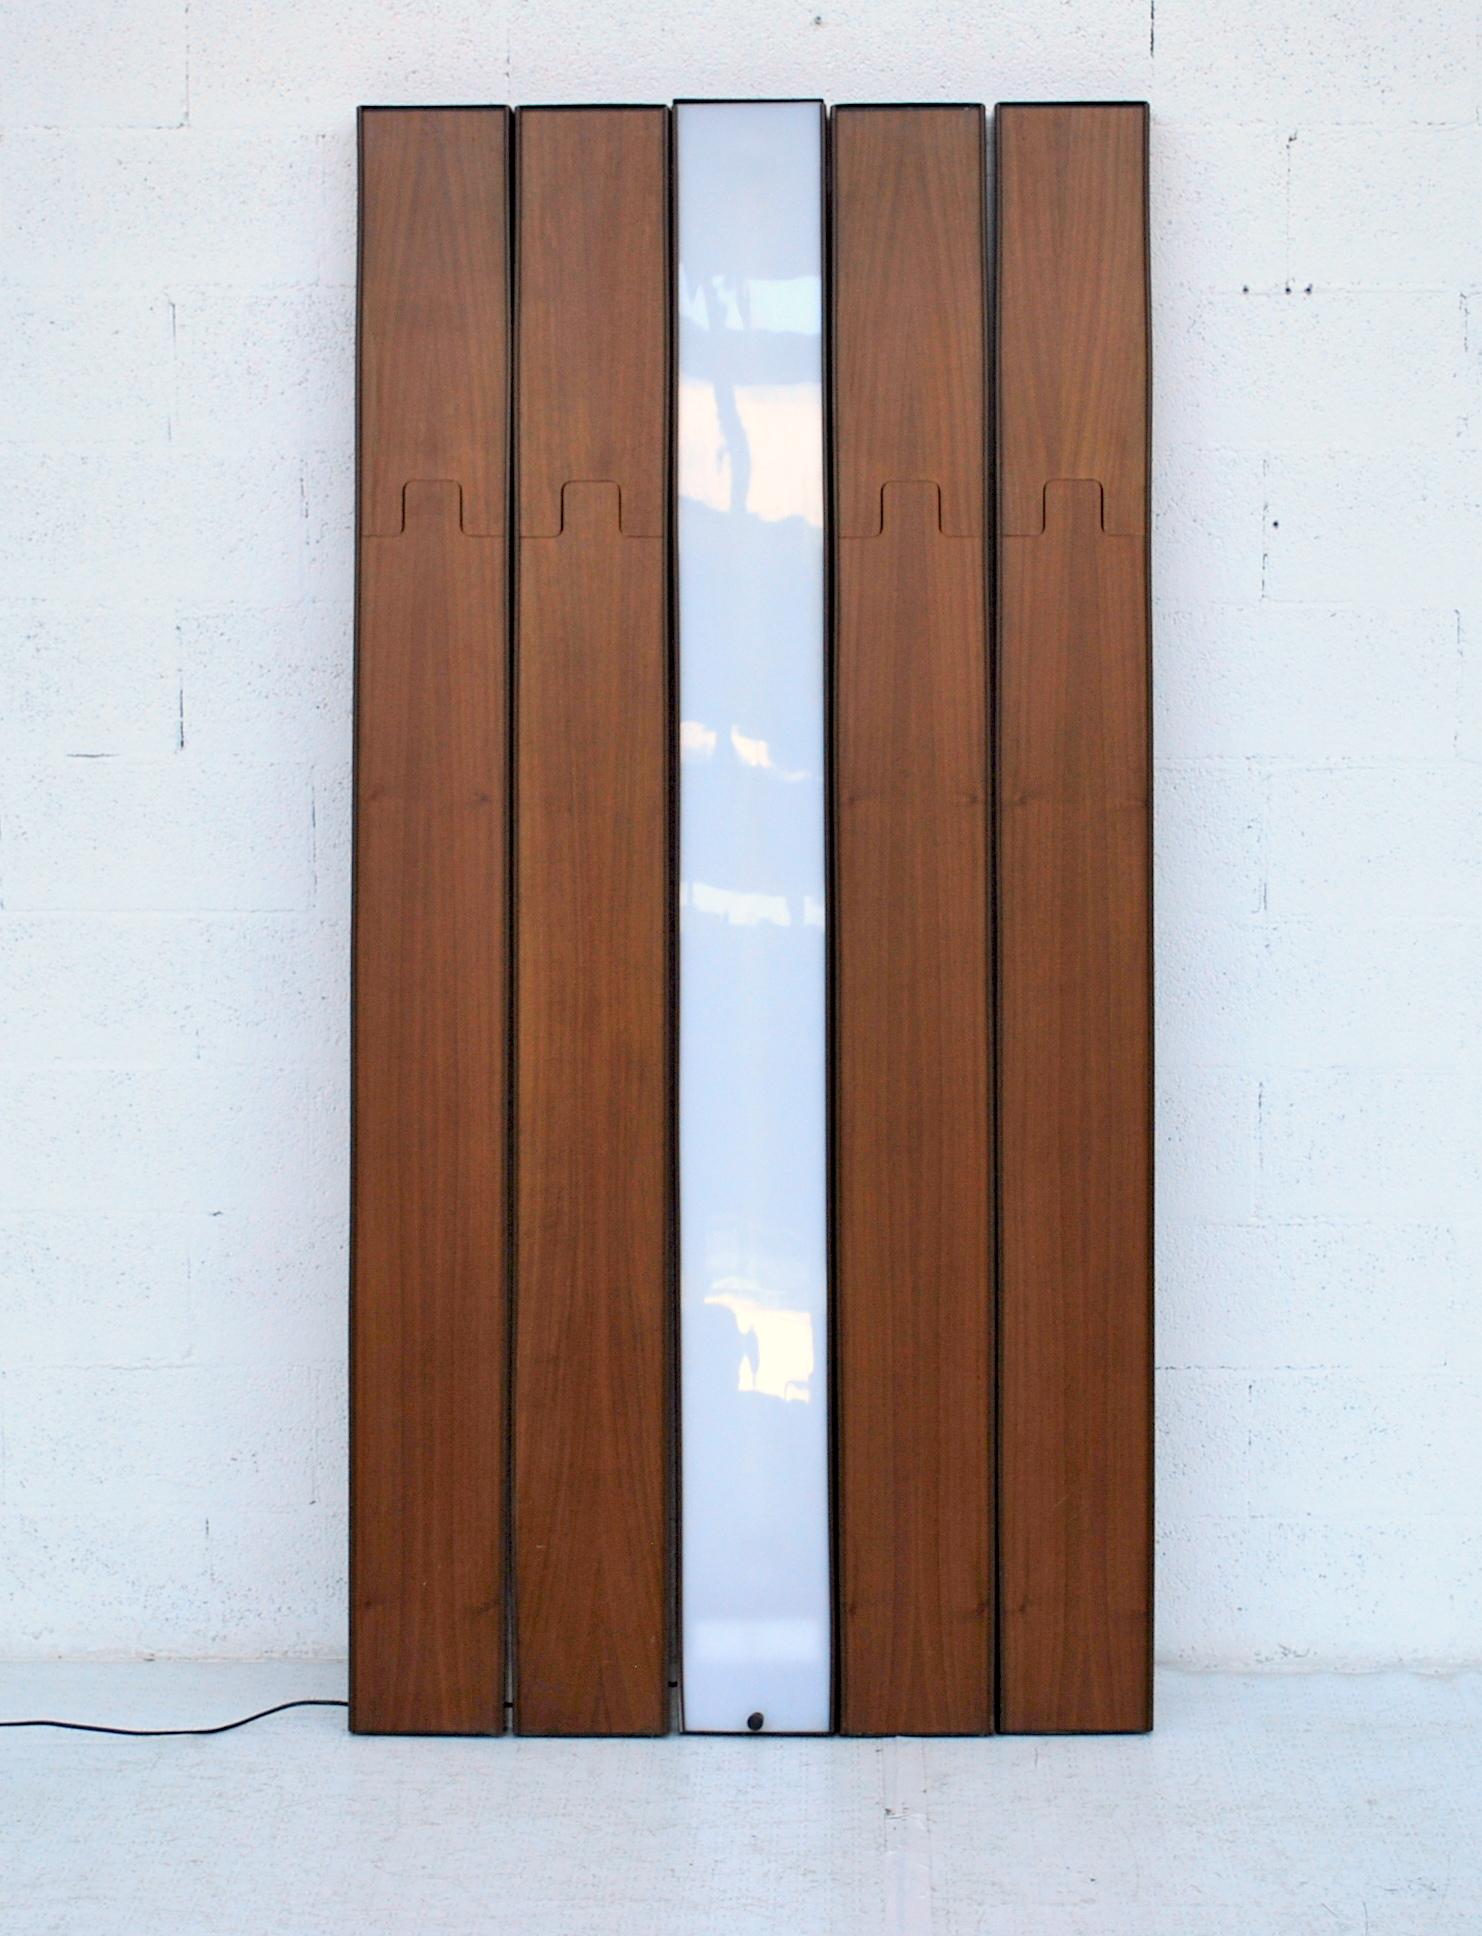 Fin du 20e siècle Porte-manteaux modulaires « Grosse » modèle de Luciano Bertoncini pour Elco, années 70